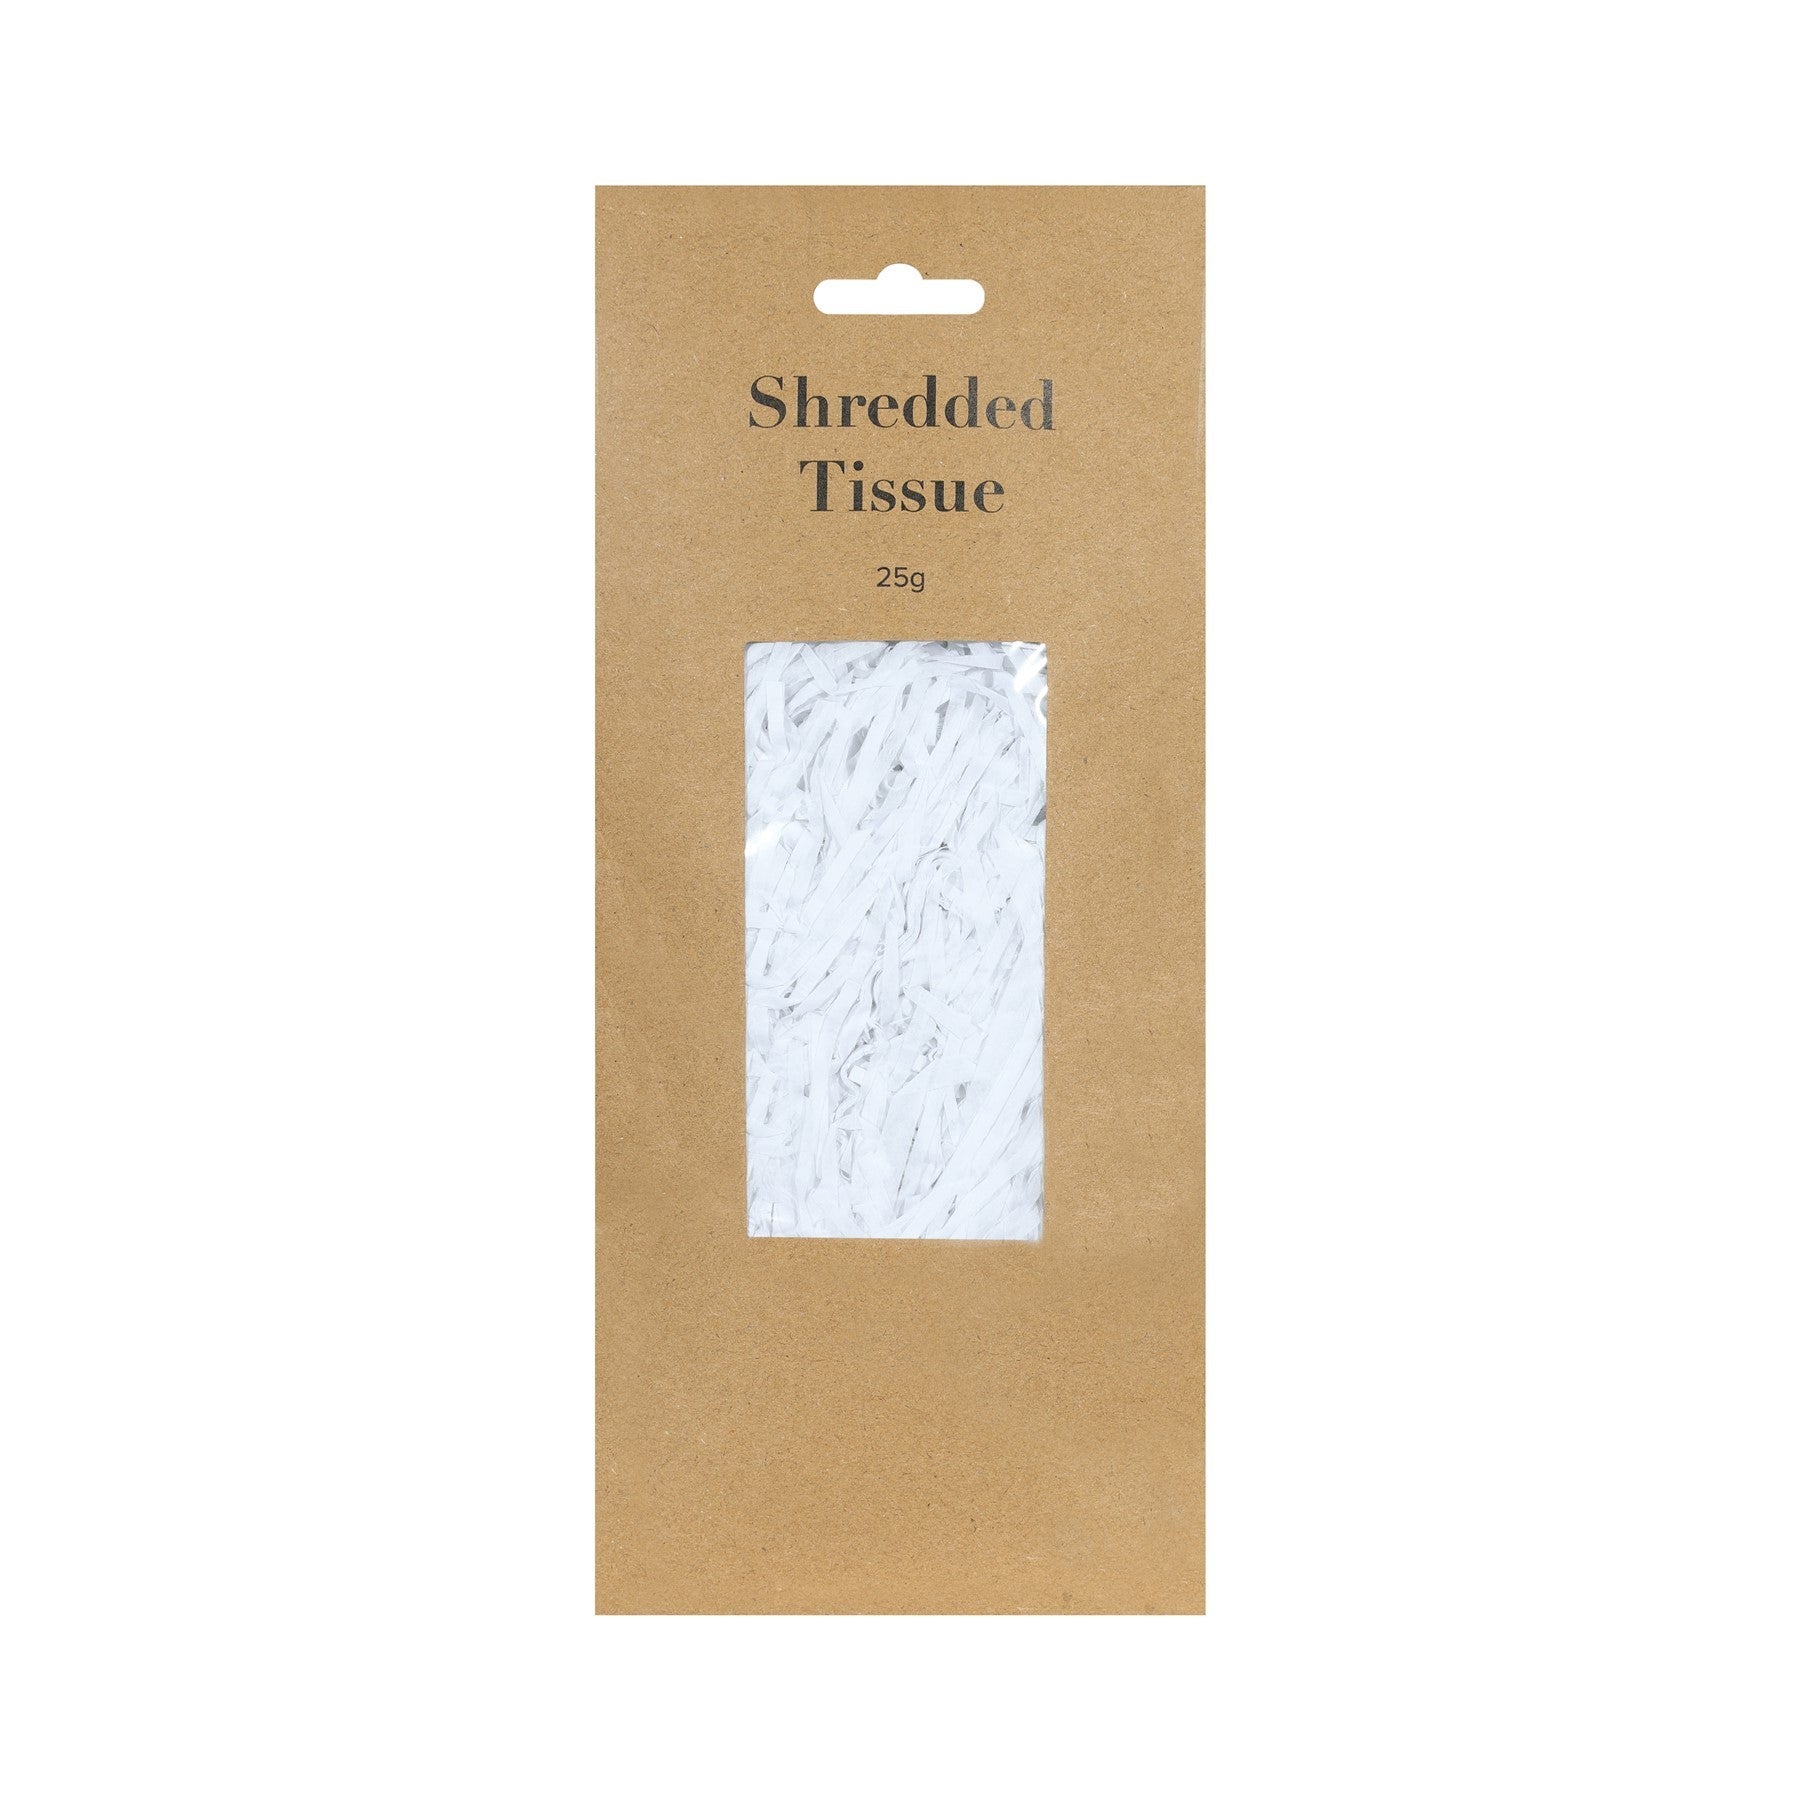 View White Shredded Tissue 25 grams information